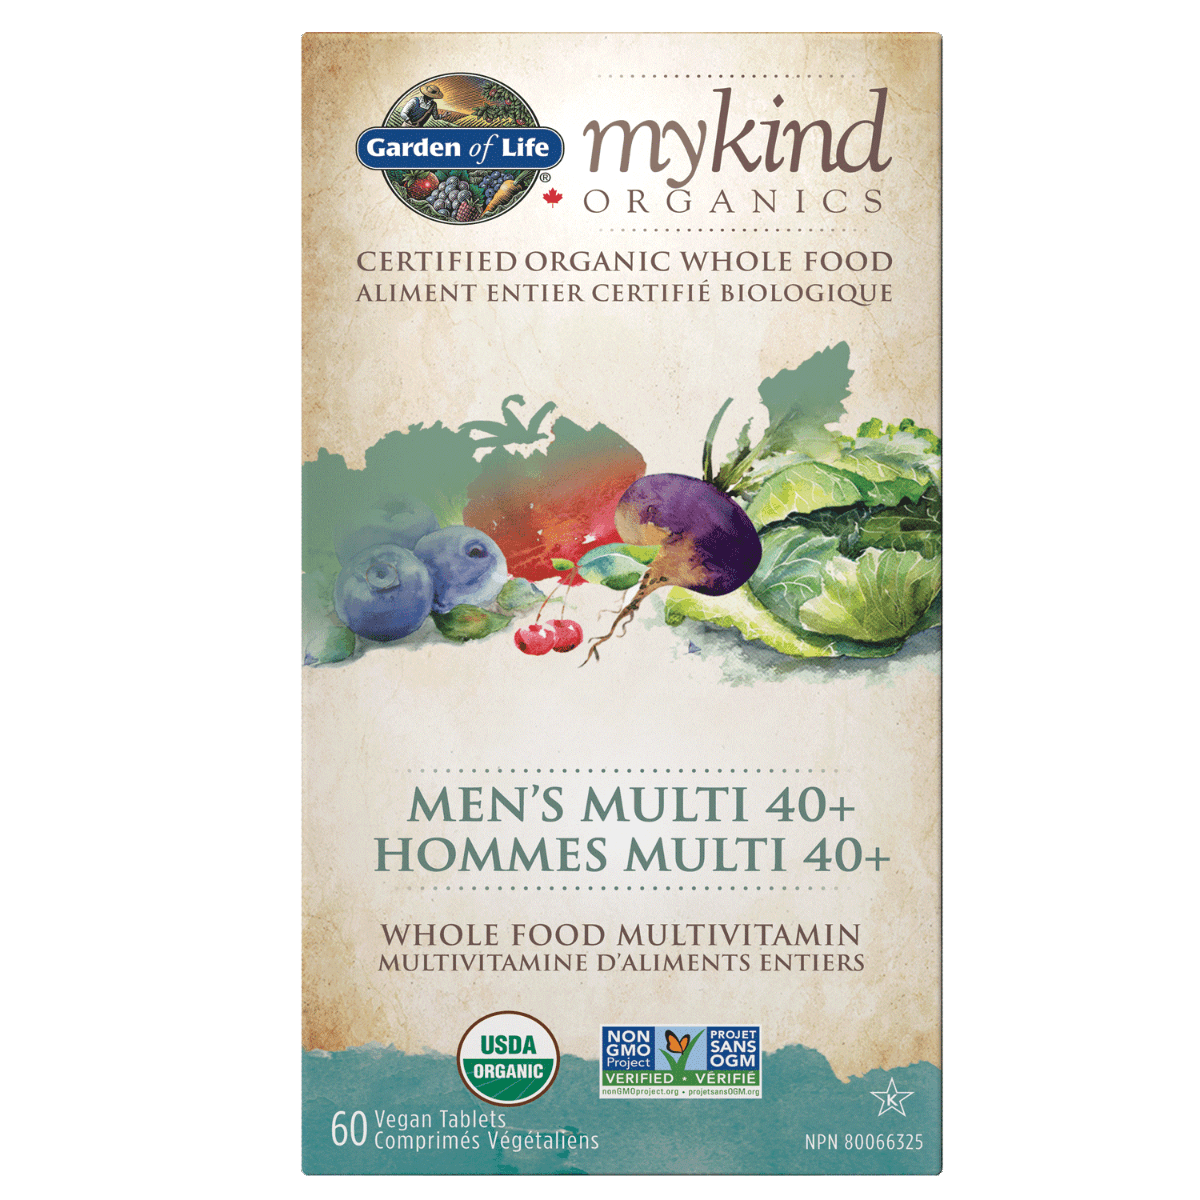 Garden of Life mykind Organics - Multivitamin - Men's Multi 40+ - 60 Vegan Tablets